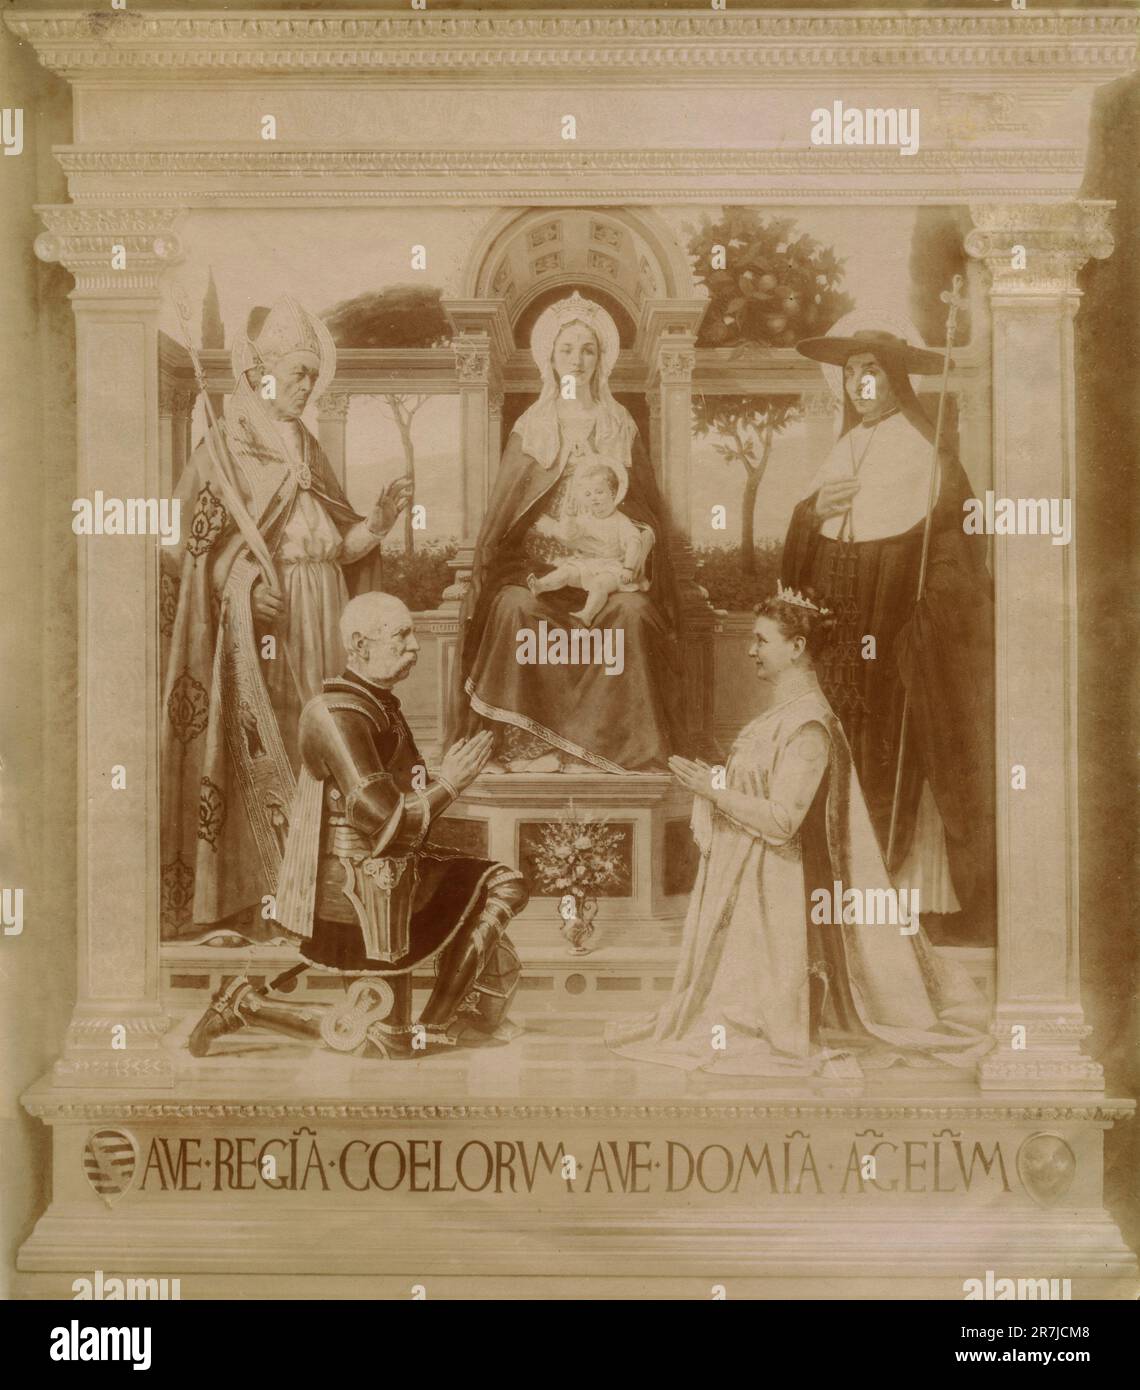 Roi d'Italie Umberto I Savoy et la reine Margherita avec la Madonna, un pape et une nonne dans un tableau d'un artiste non identifié, 1900s Banque D'Images